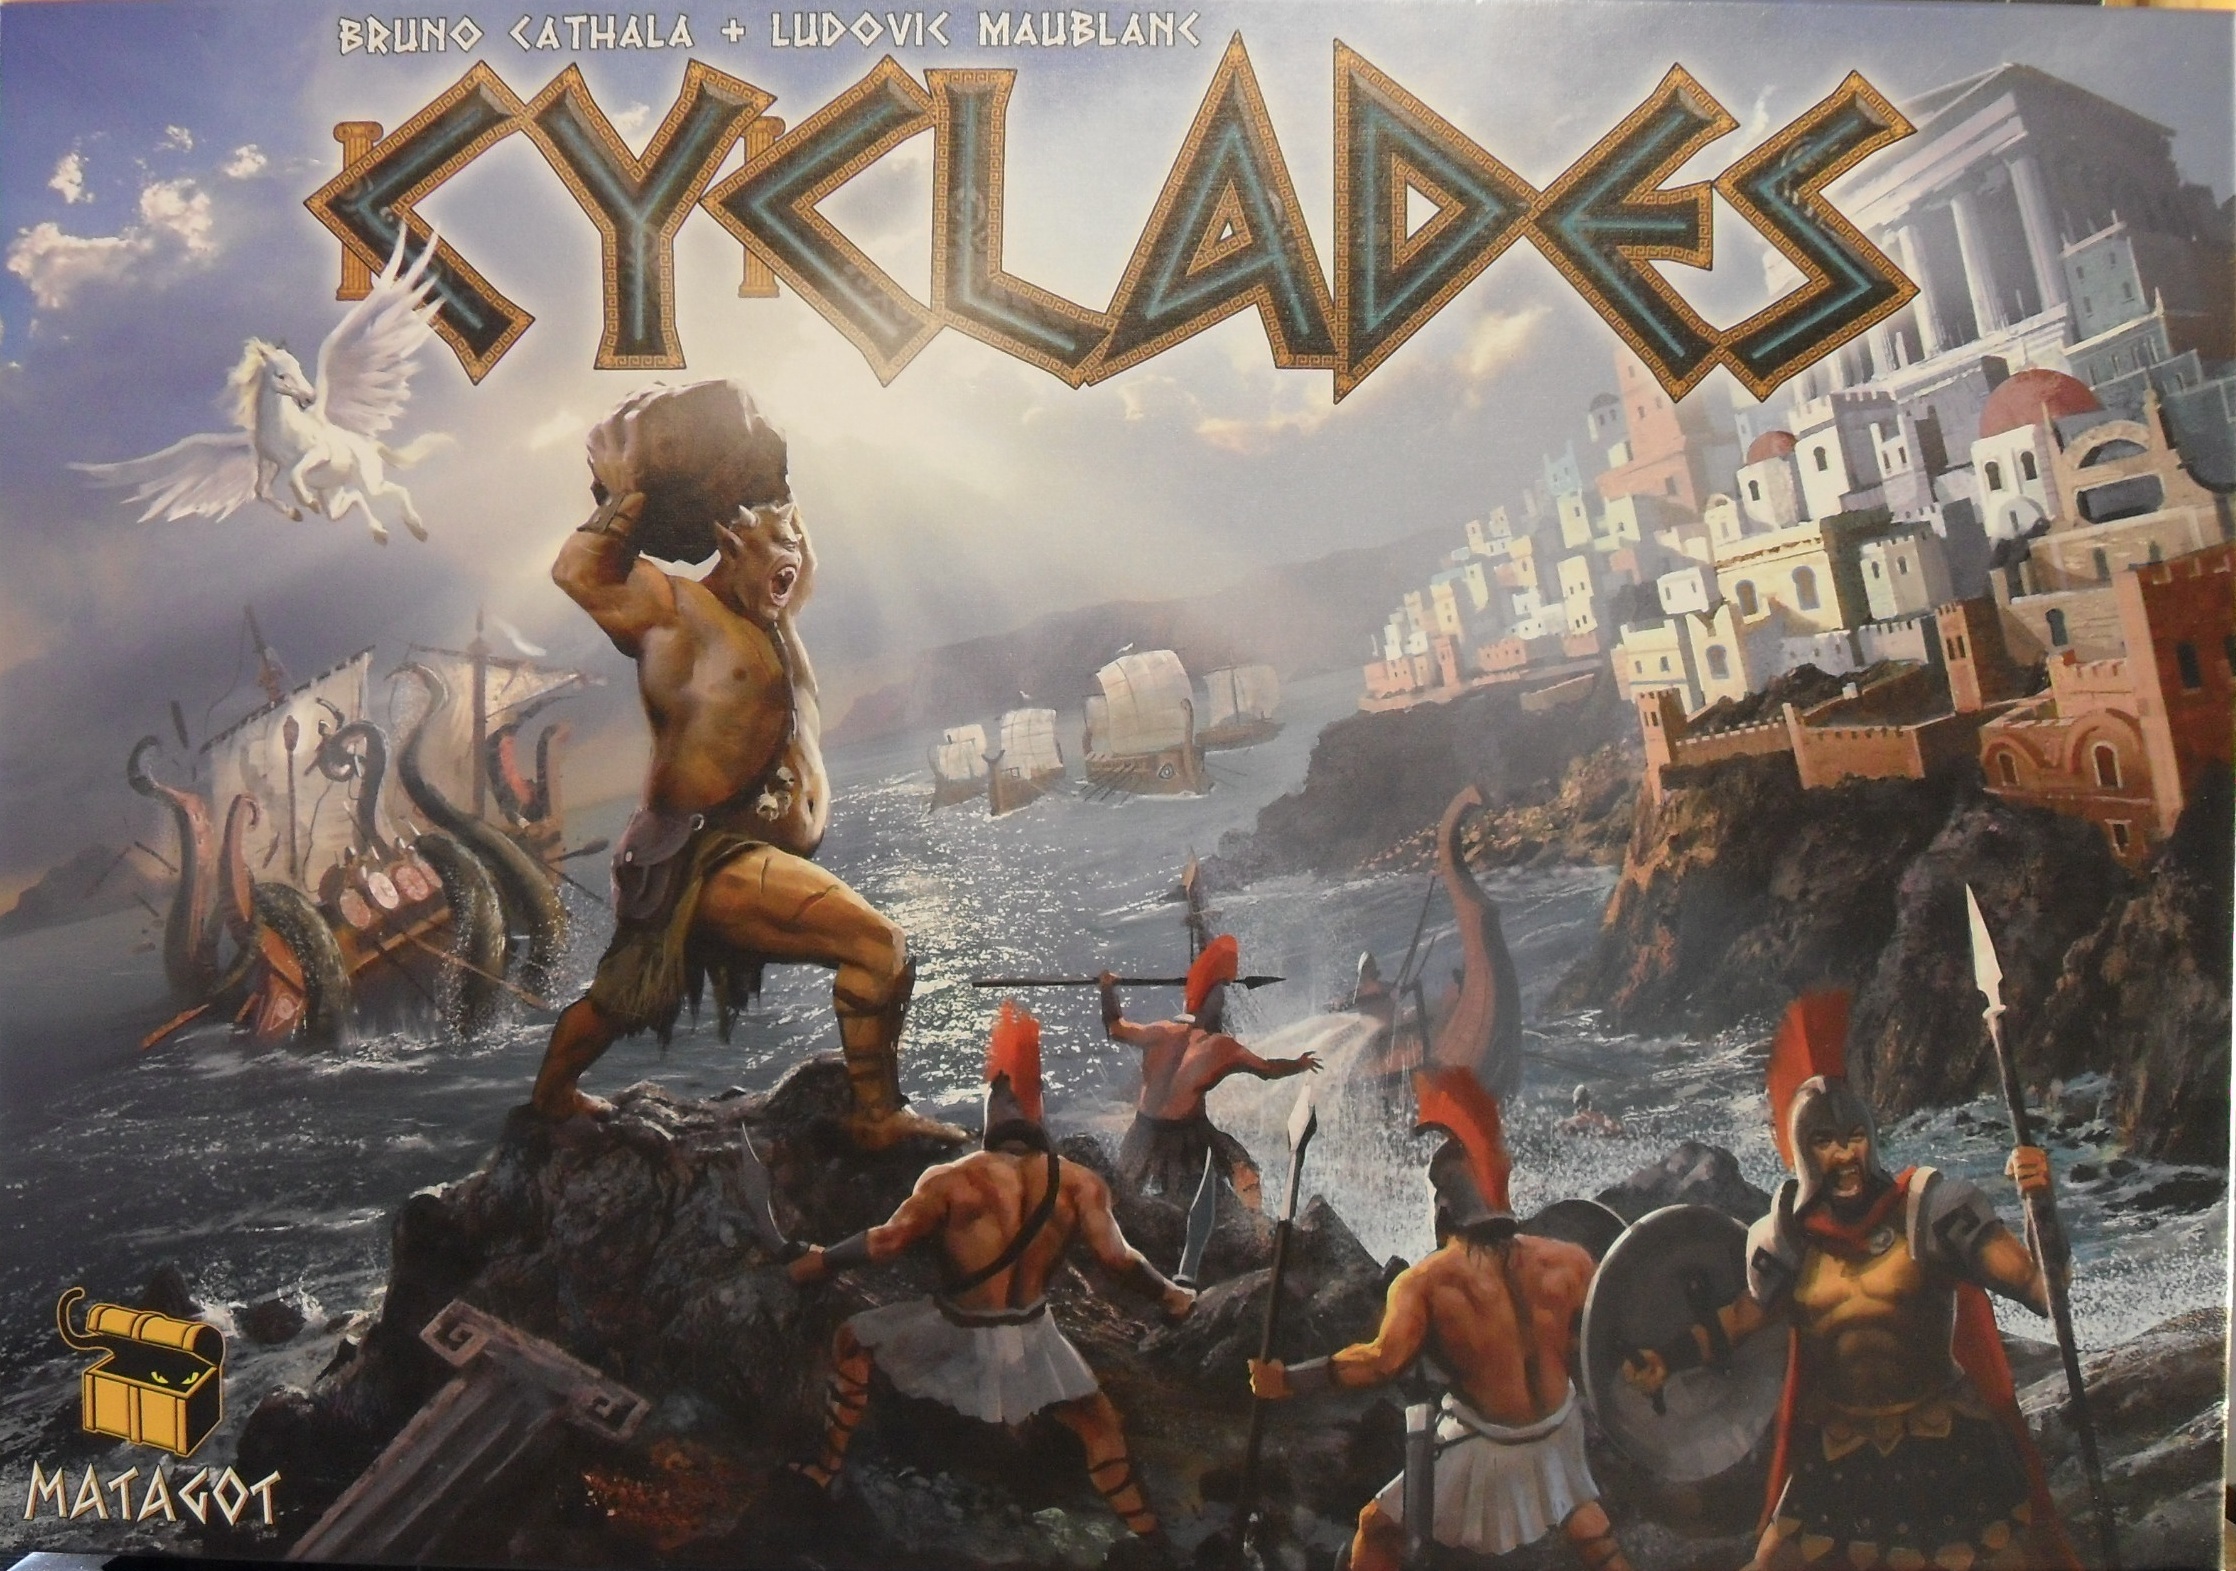 Cyclades

